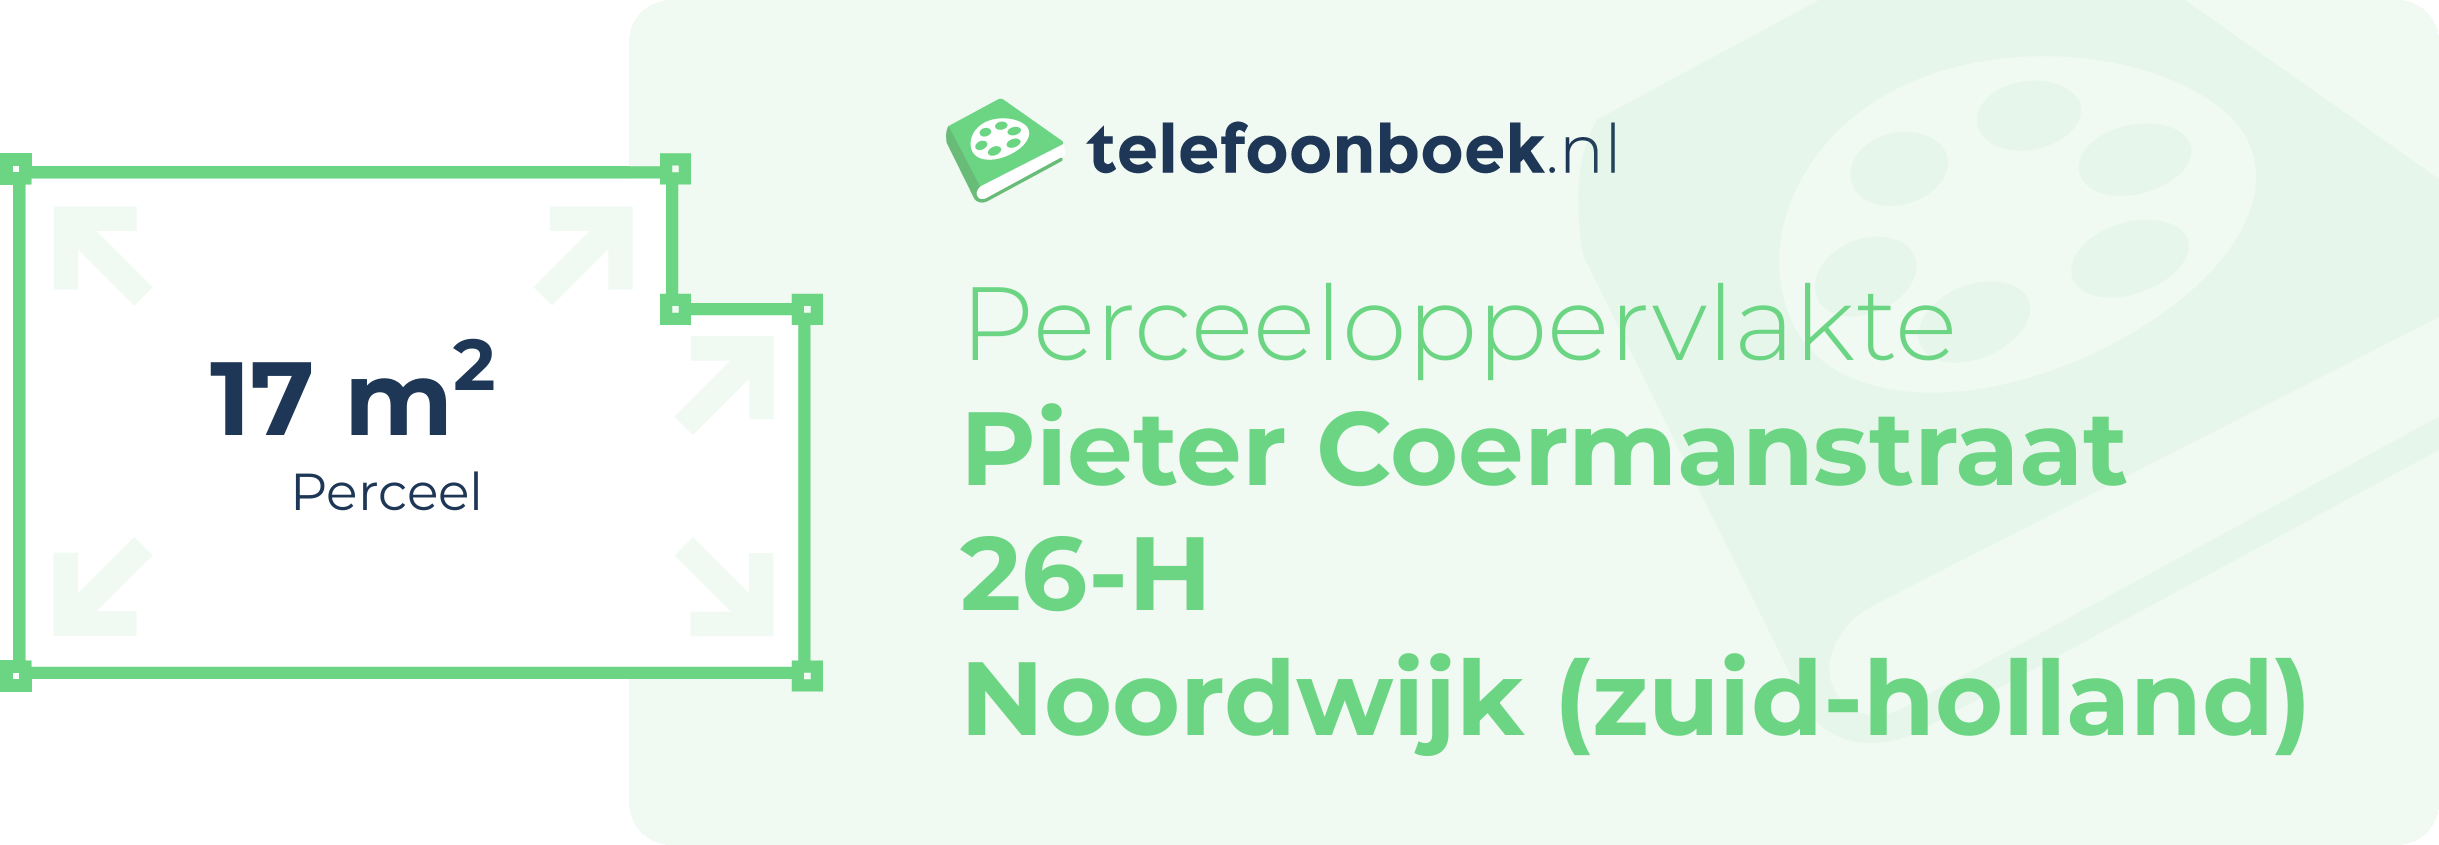 Perceeloppervlakte Pieter Coermanstraat 26-H Noordwijk (Zuid-Holland)